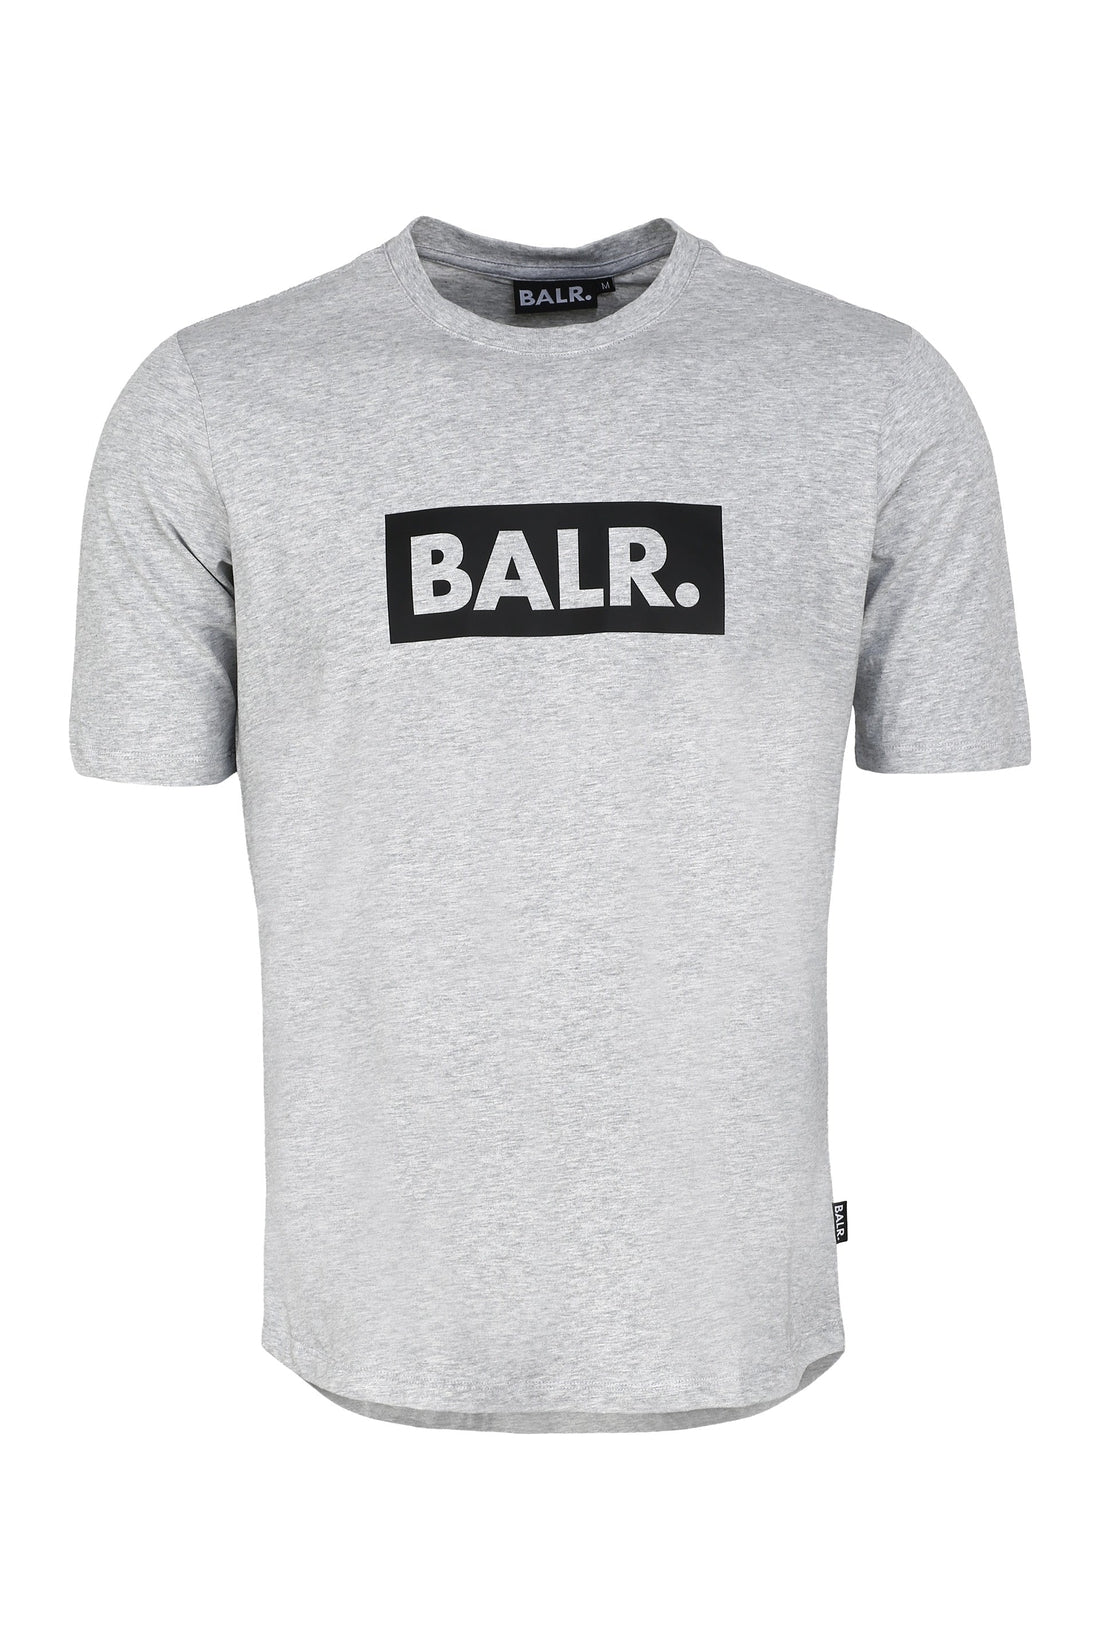 BALR.-OUTLET-SALE-Logo print cotton T-shirt-ARCHIVIST